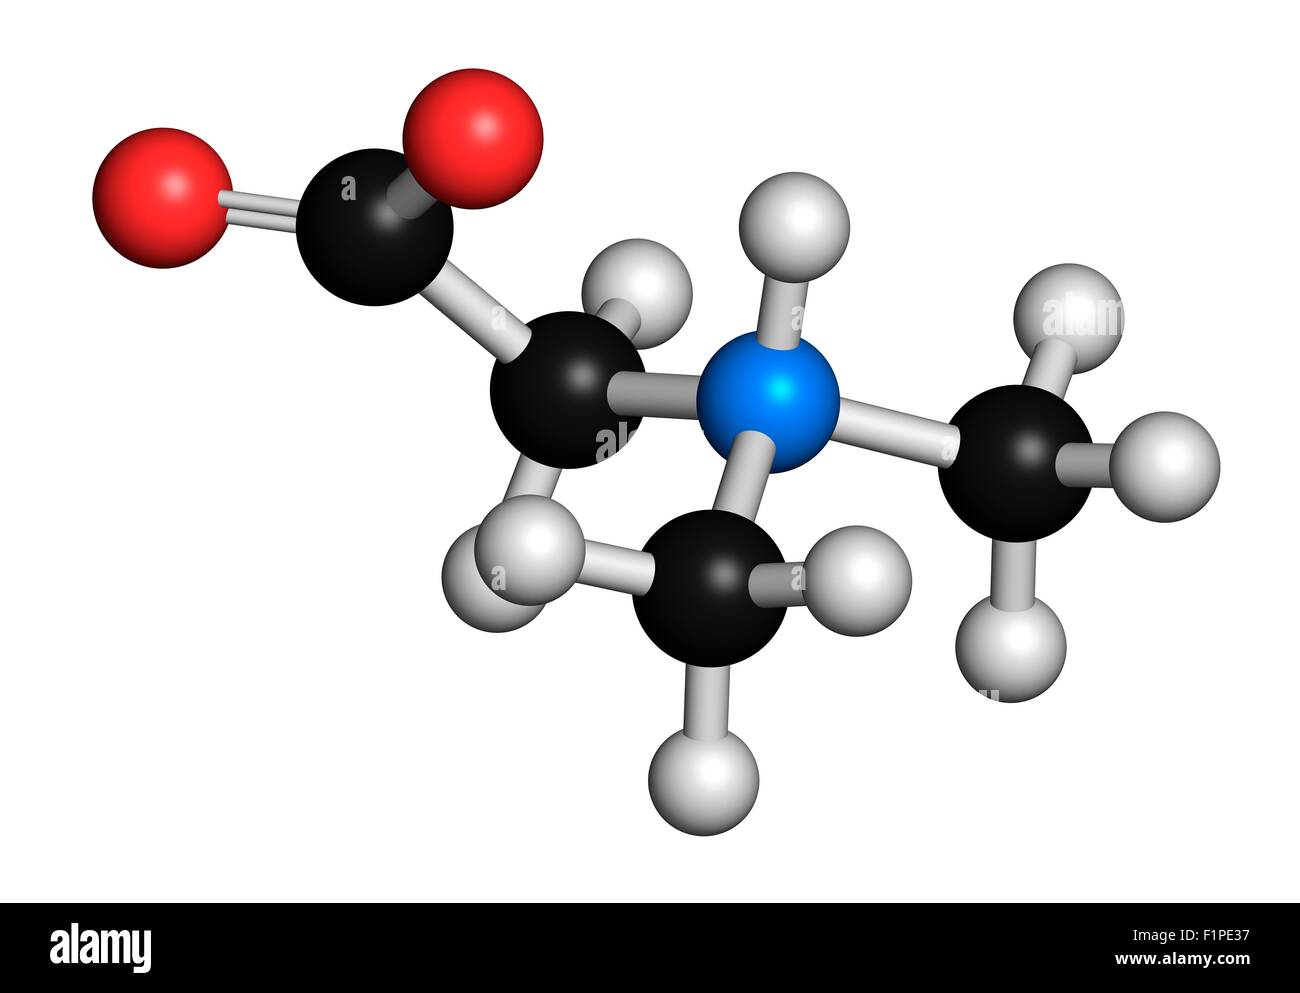 Dimethylglycin (DMG) Molekül nachhelfen Derivat von Glycin in leistungssteigernde Nahrungsergänzungsmittel verwendet werden Atome Stockfoto